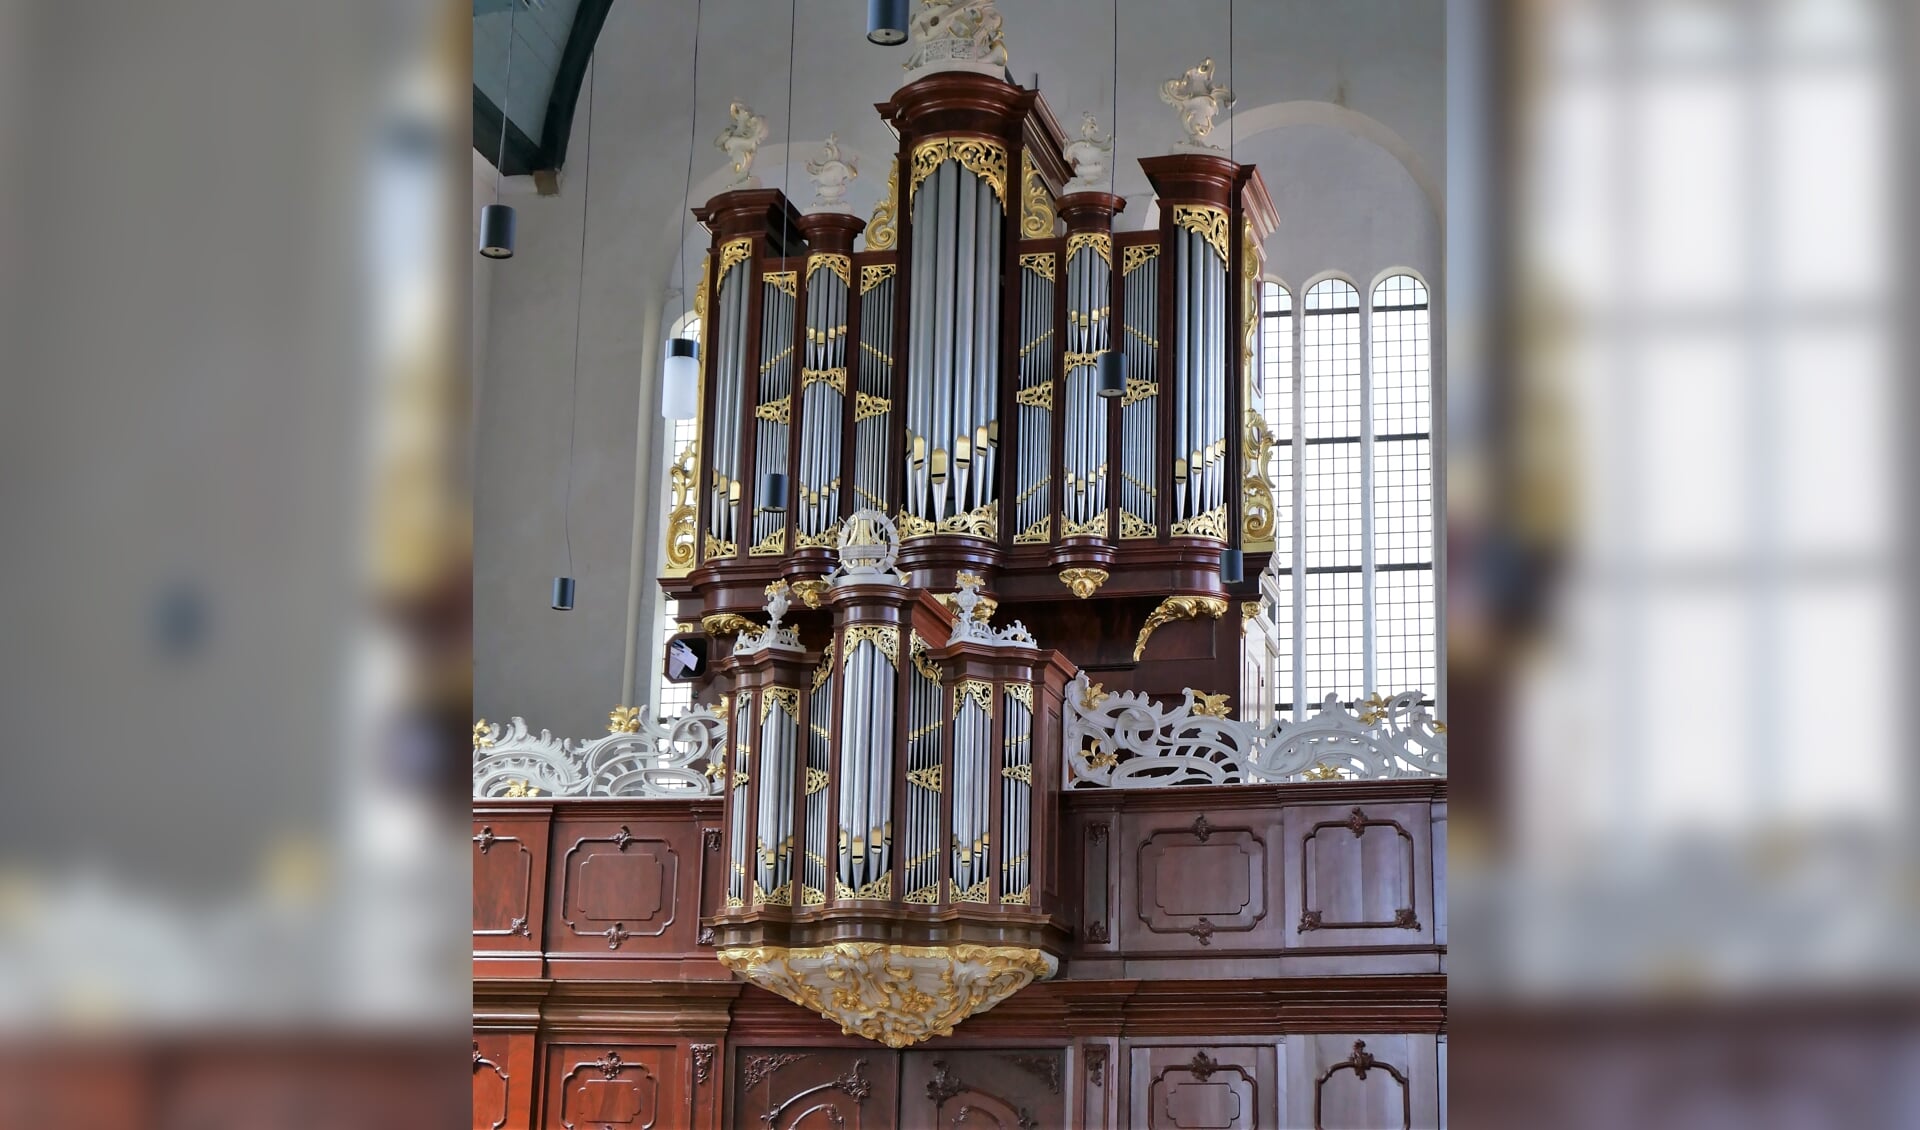 Het orgel in de Oosterkerk in Hoorn.